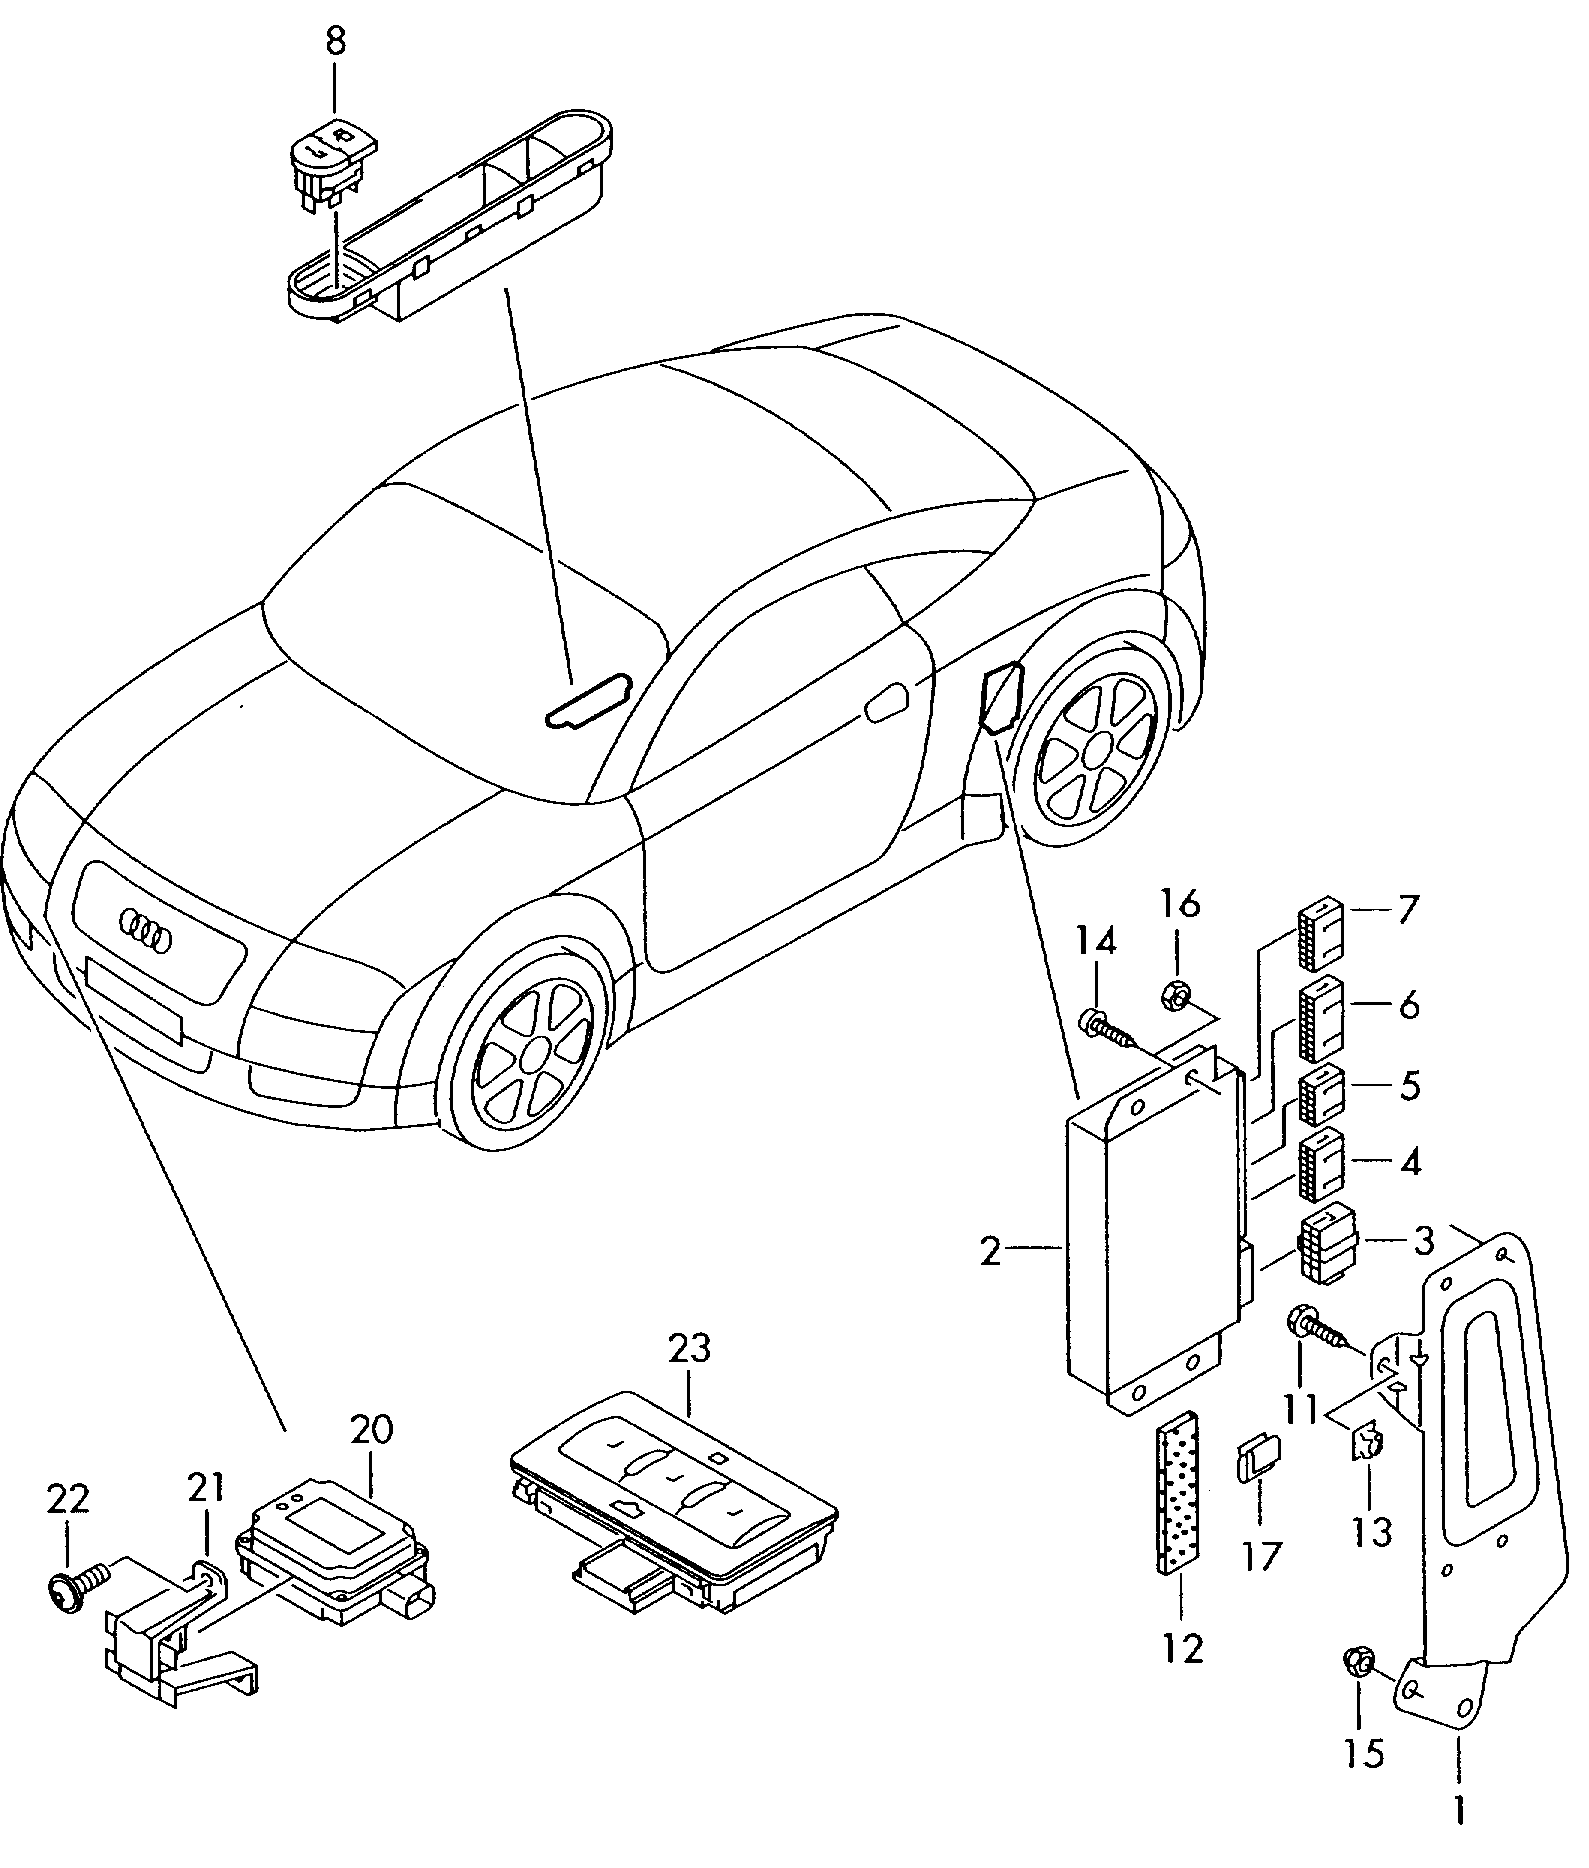 Steuergeraet fuer
Garagentoroeffnung - Audi A4/S4 Cabrio./qu.(AA4C)  